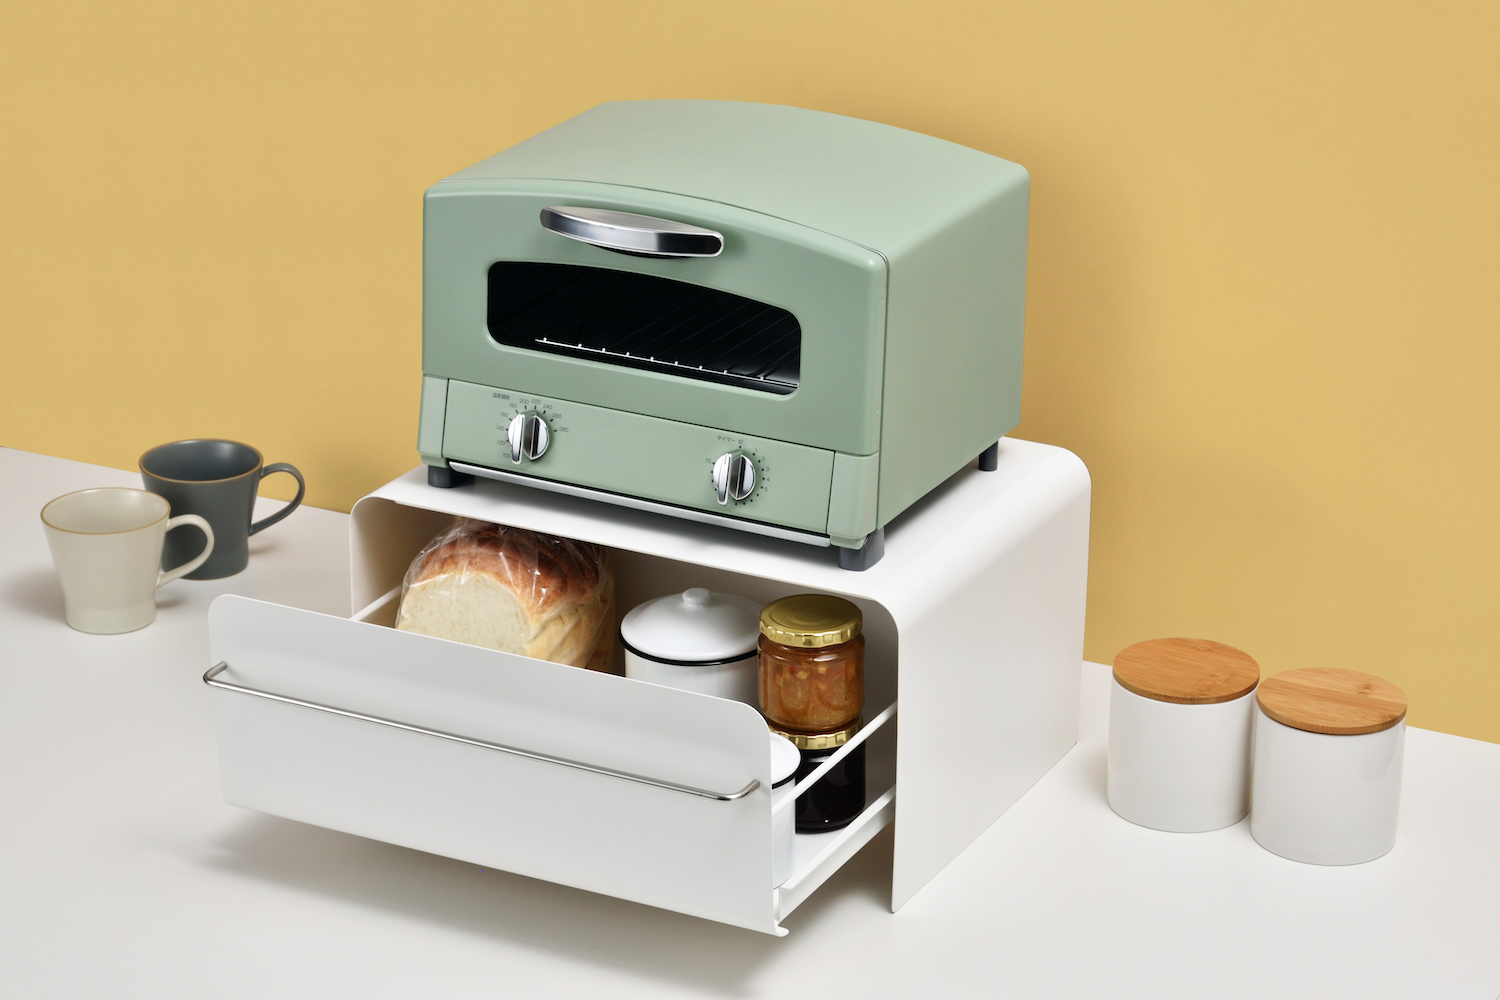 トースターを上に置ける「ブレッドドロワー」でごちゃつきがちなキッチンをすっきり整頓